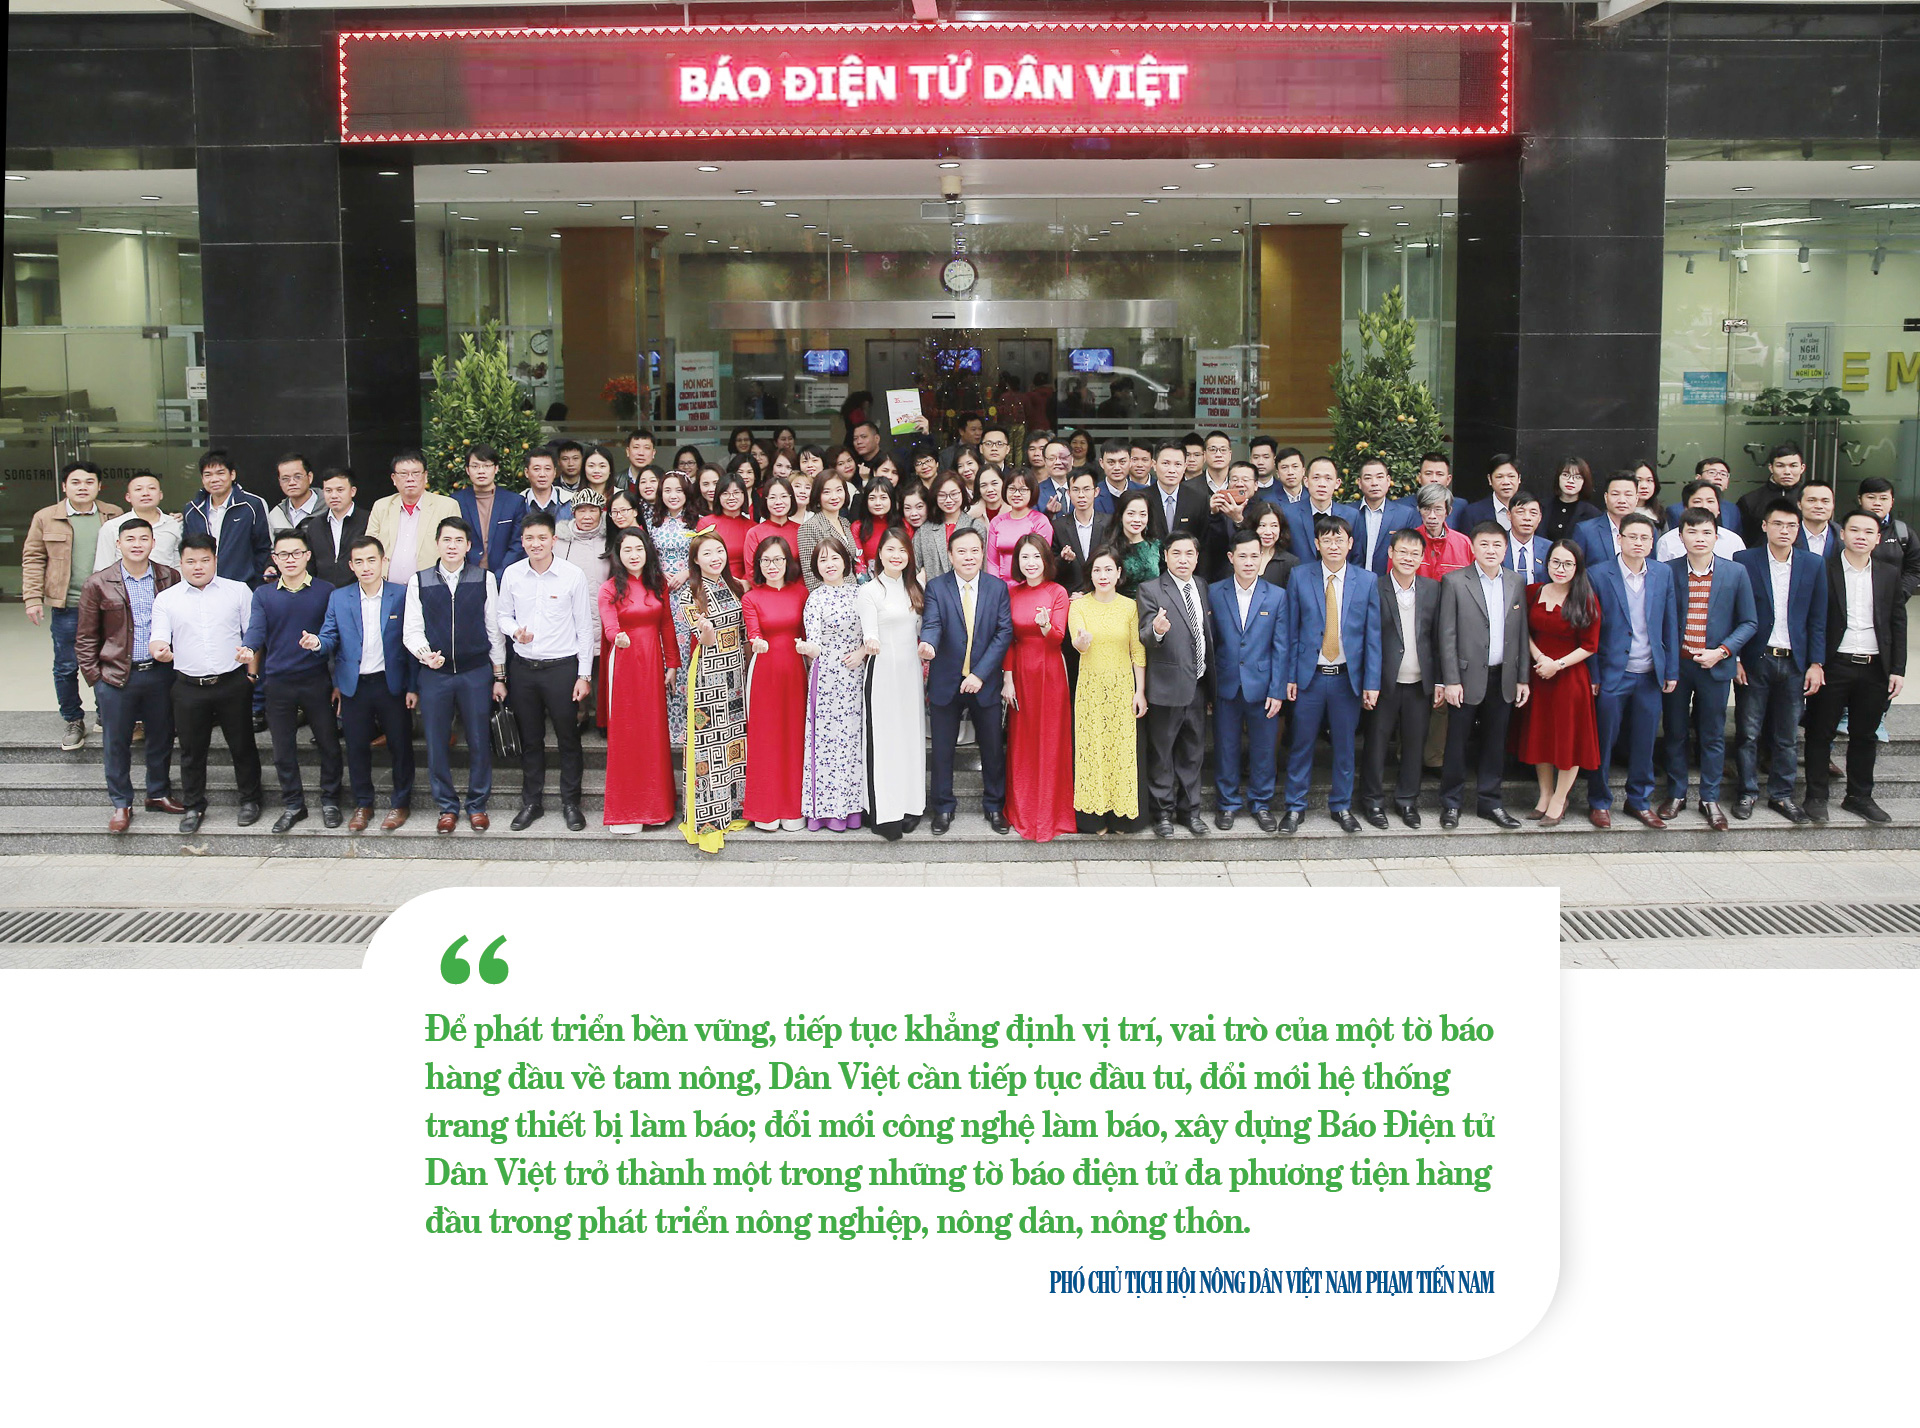 Phó Chủ tịch Hội NDVN: Báo Dân Việt phát huy bản sắc, sát cánh cùng nông dân trên mọi nẻo đường - Ảnh 7.